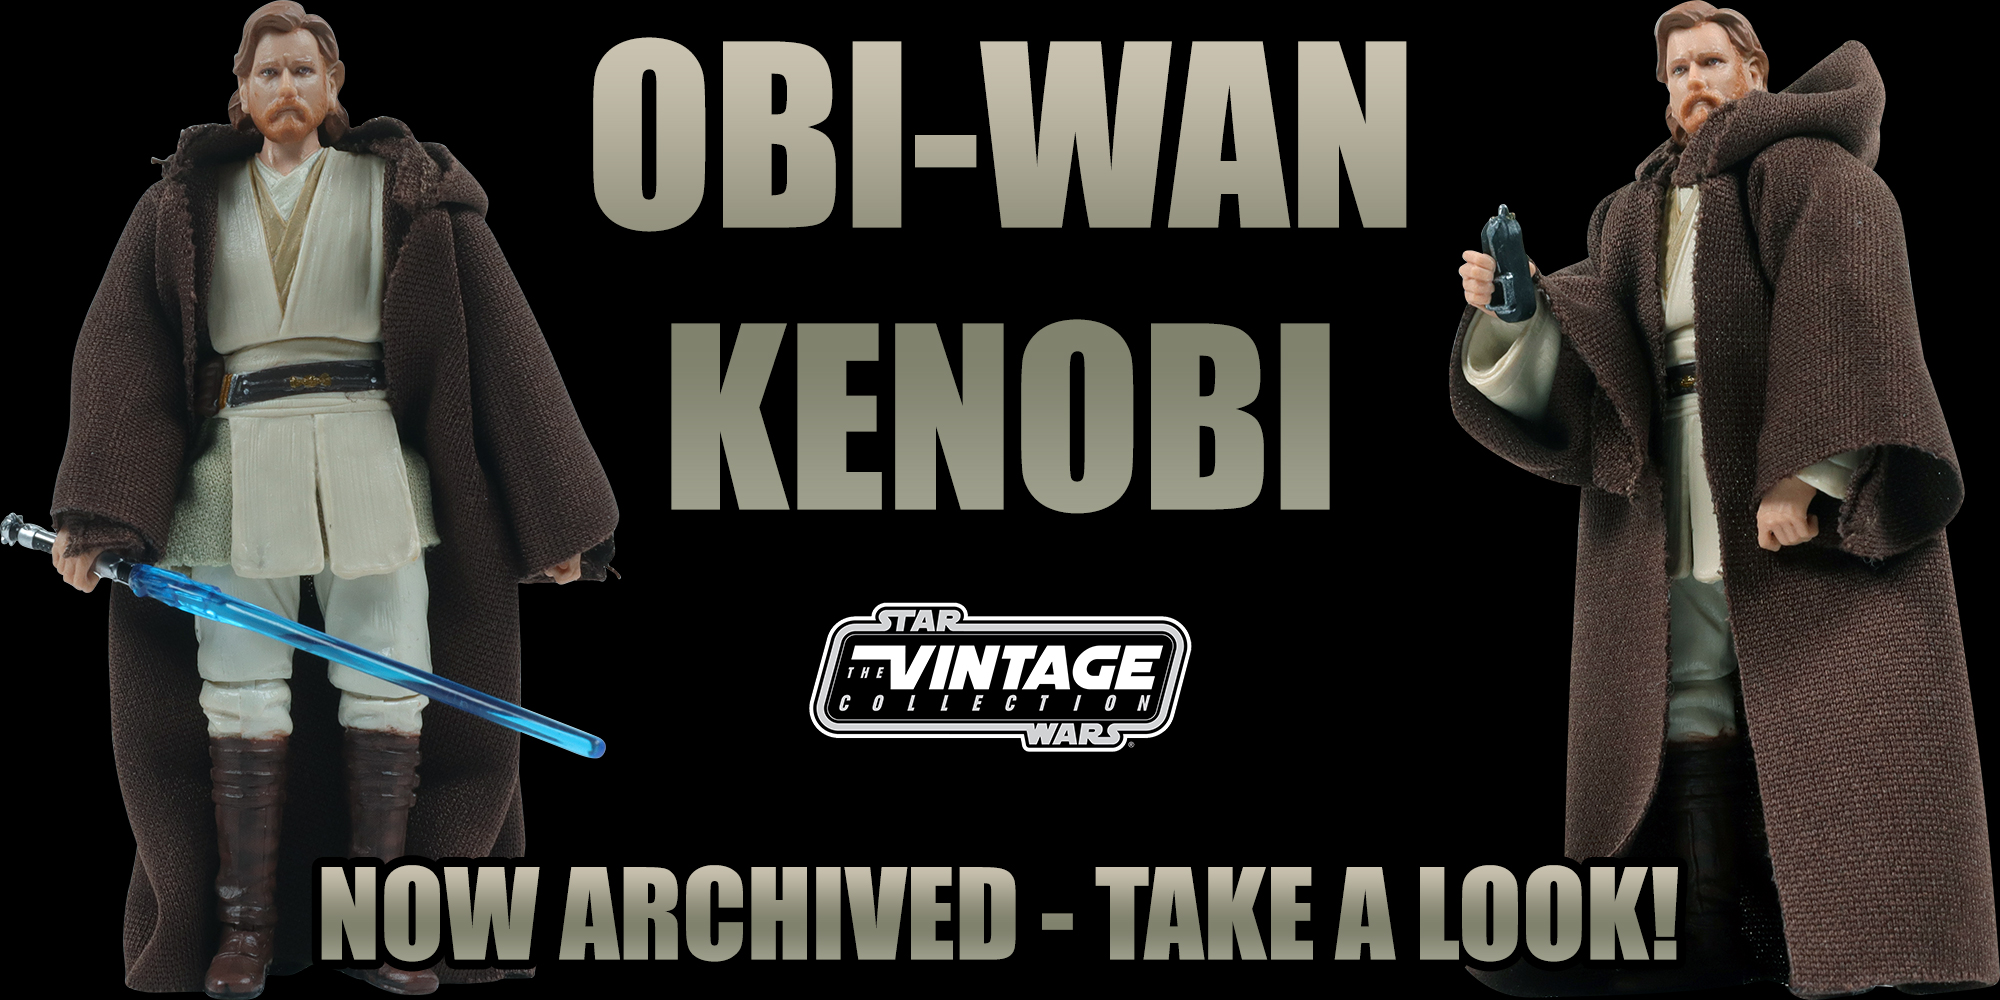 Obi-Wan Kenobi VC31 (Reissue) Added